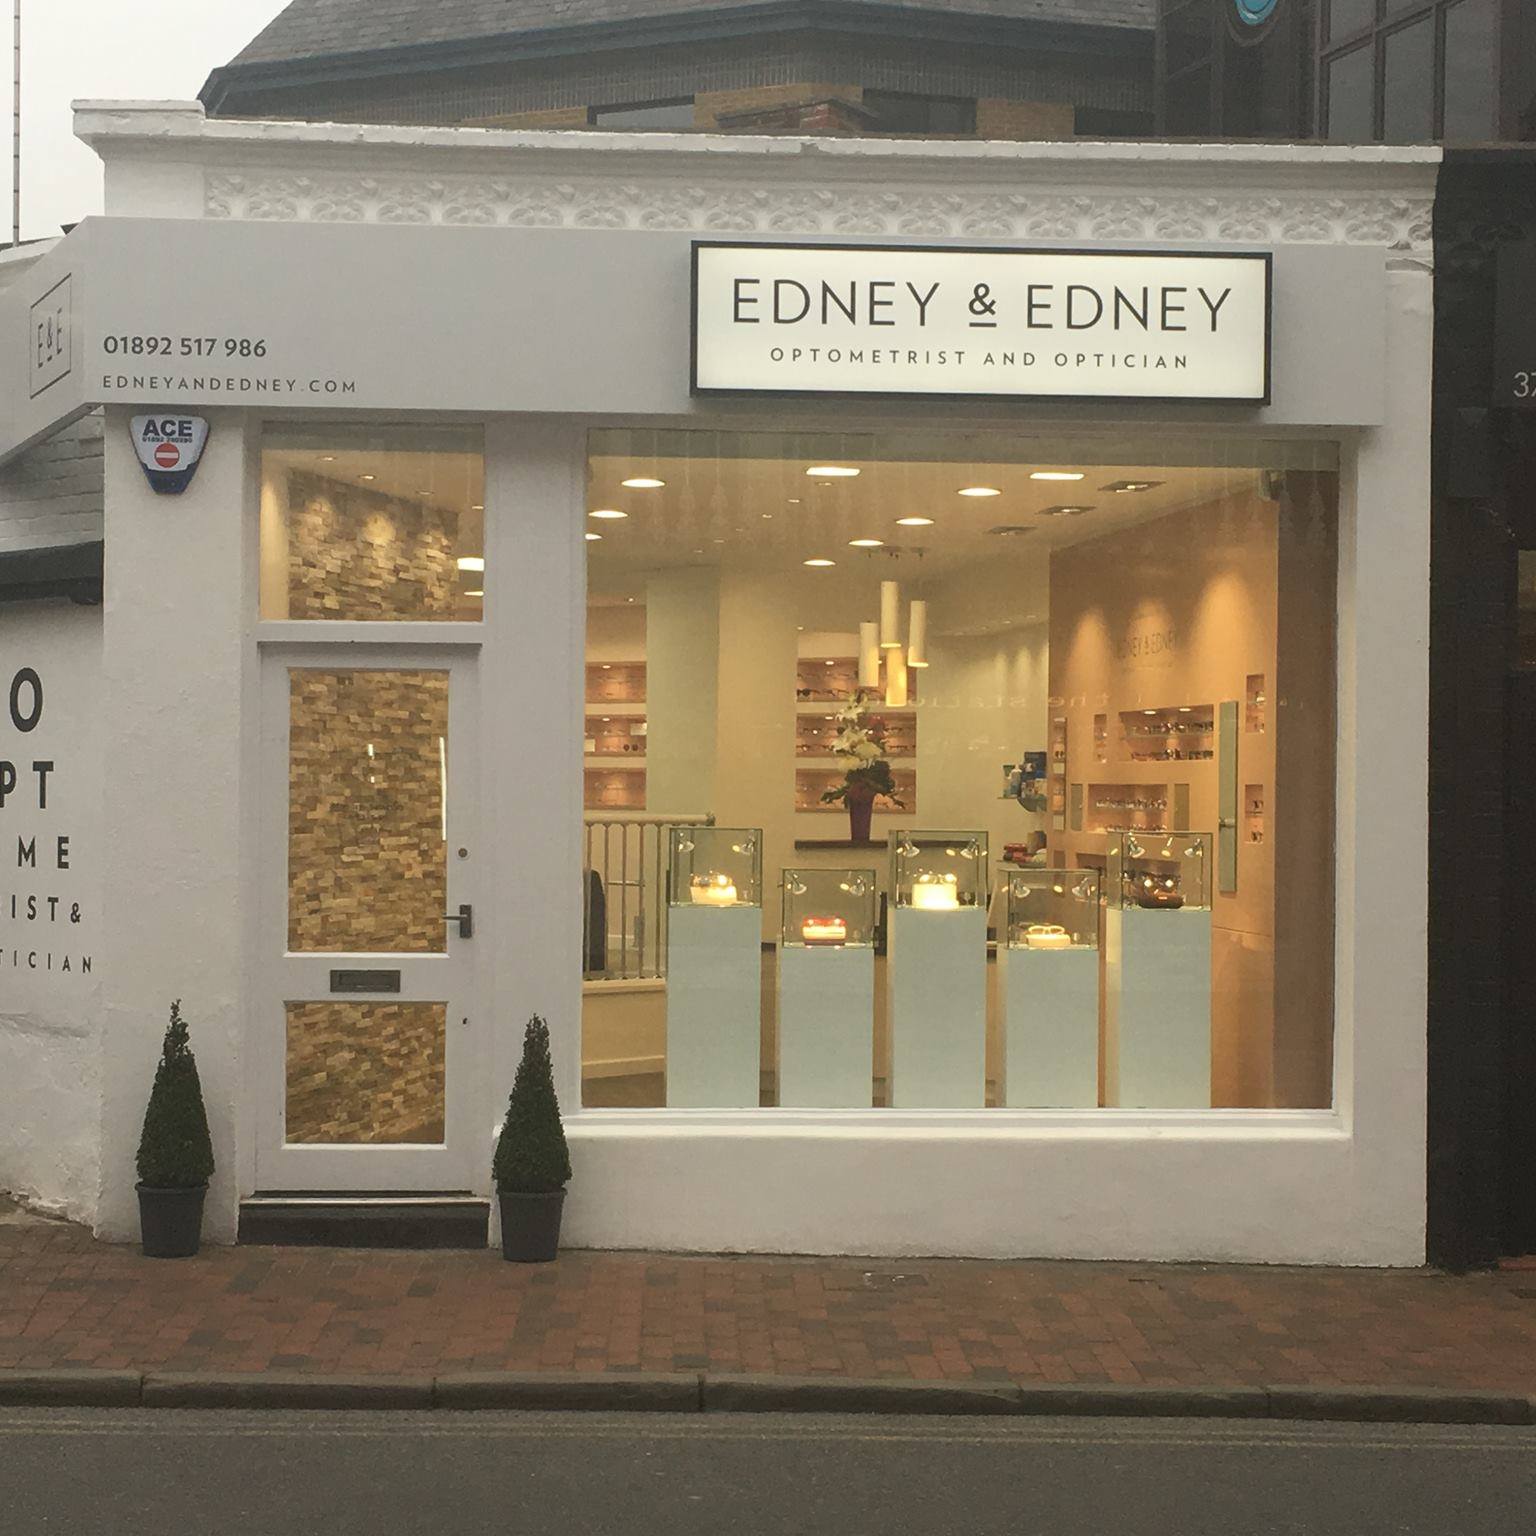 Edney & Edney